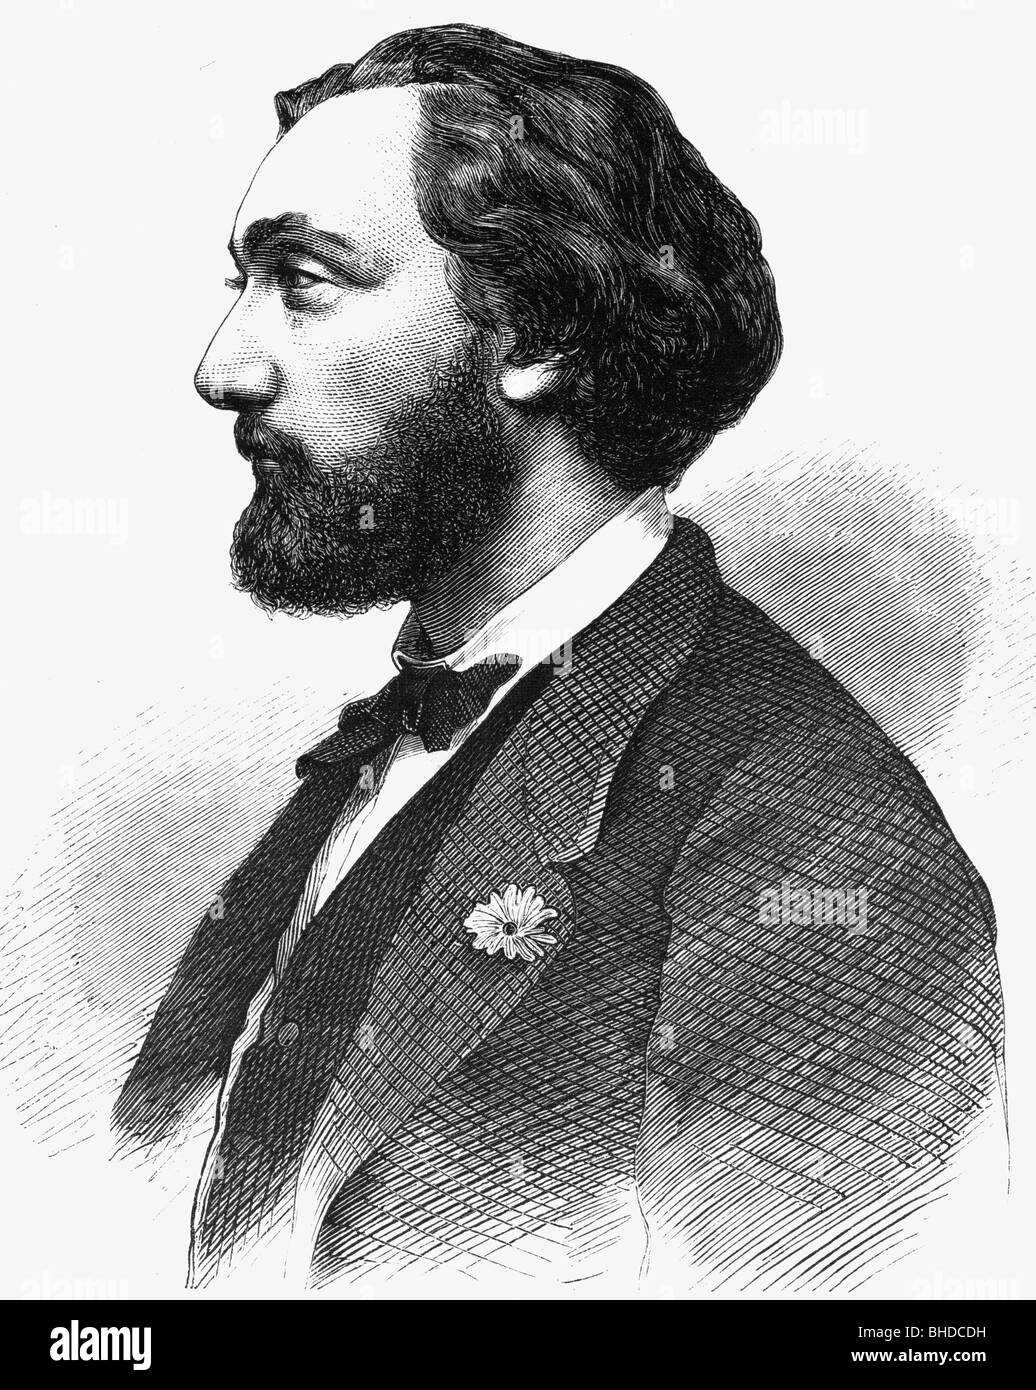 Gambetta, León Michel, 3.4.1838 - 31.12.1882, político francés, retrato, grabado en madera, siglo 19, Foto de stock